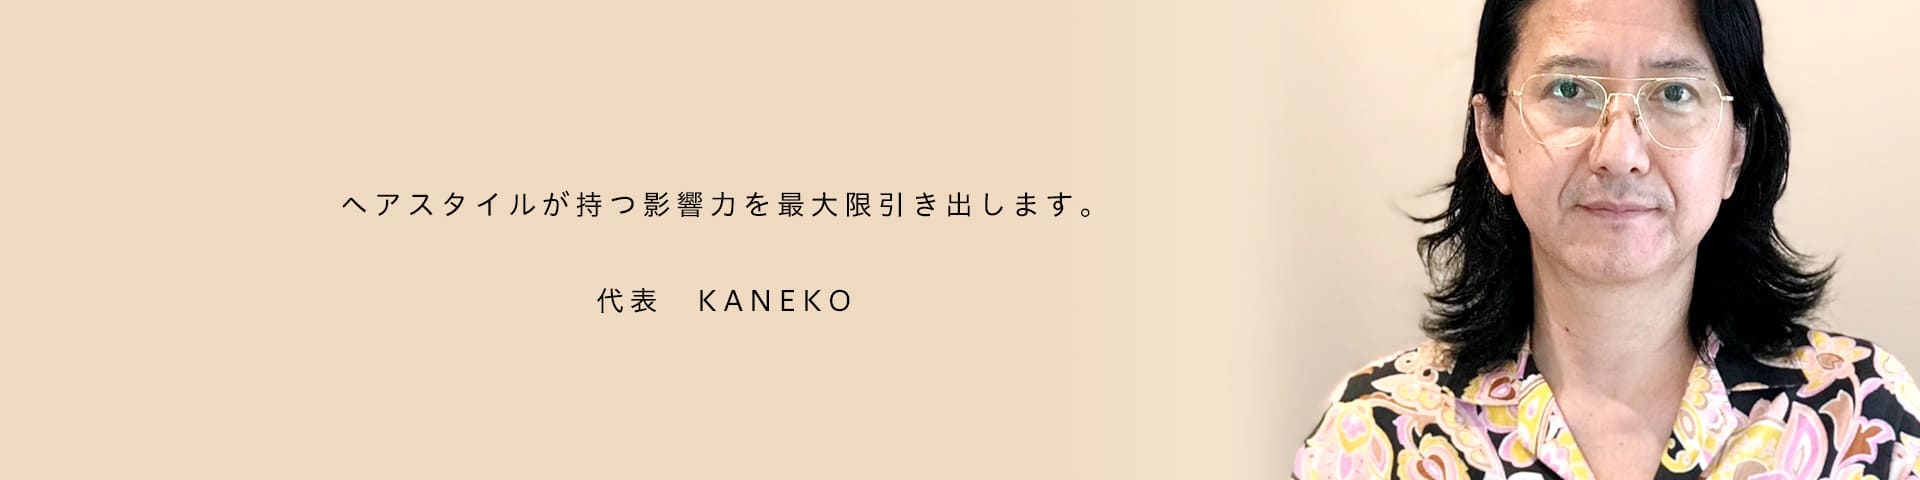 ヘアスタイルが持つ影響力を最大限引き出します。代表 KANEKO